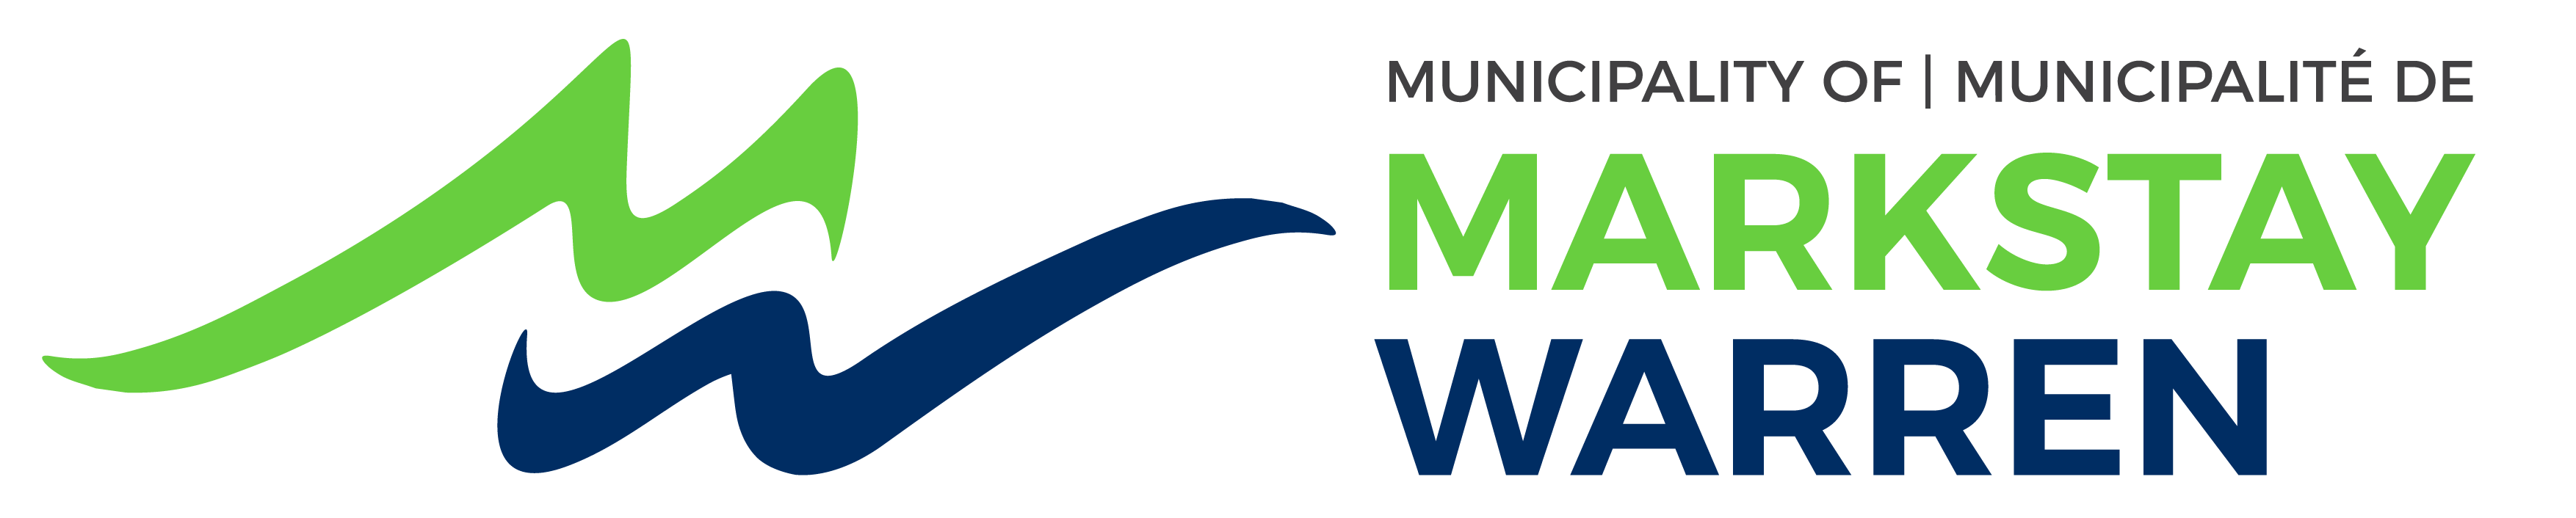 Municipality of Markstay-Warren